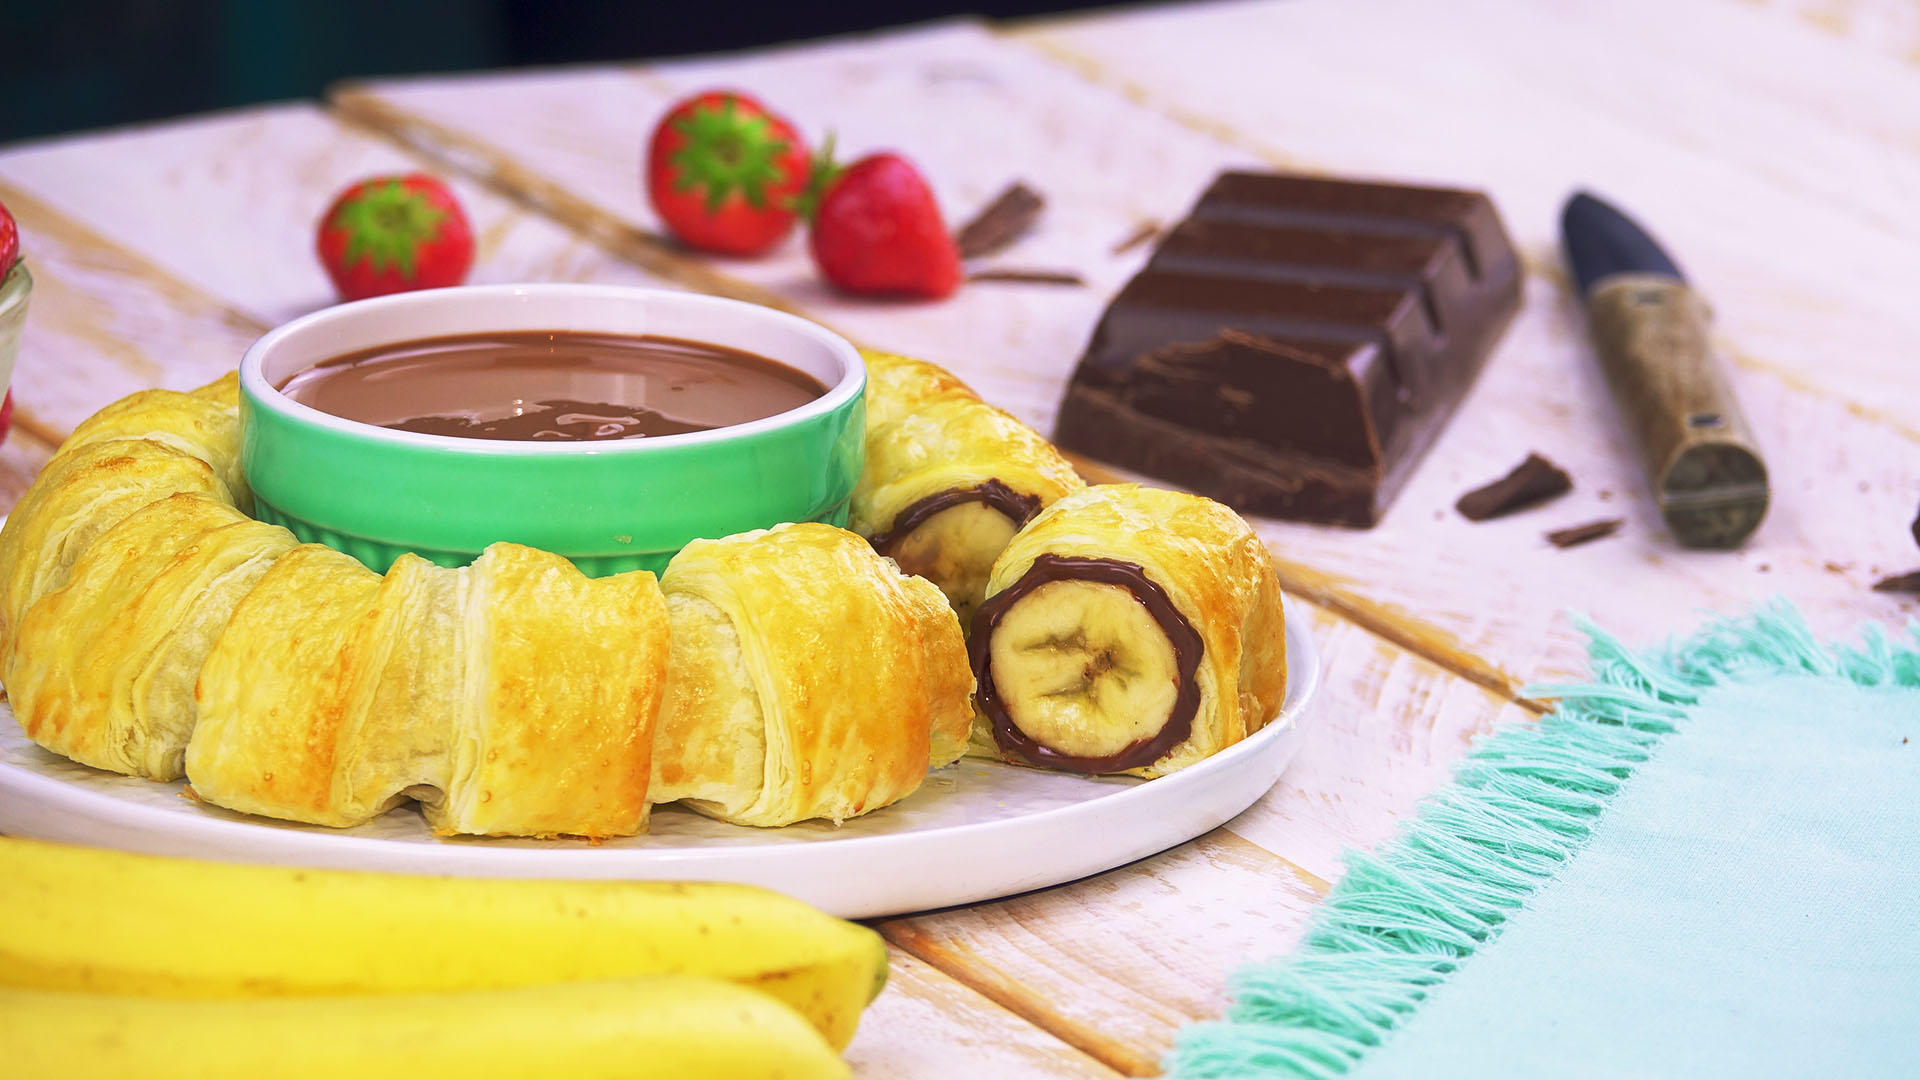 Ein Nutella-Bananen-Ring mit einer Schale Nutella in der Mitte, daneben Erdbeeren, Bananen und ein Block Kuvertüre.